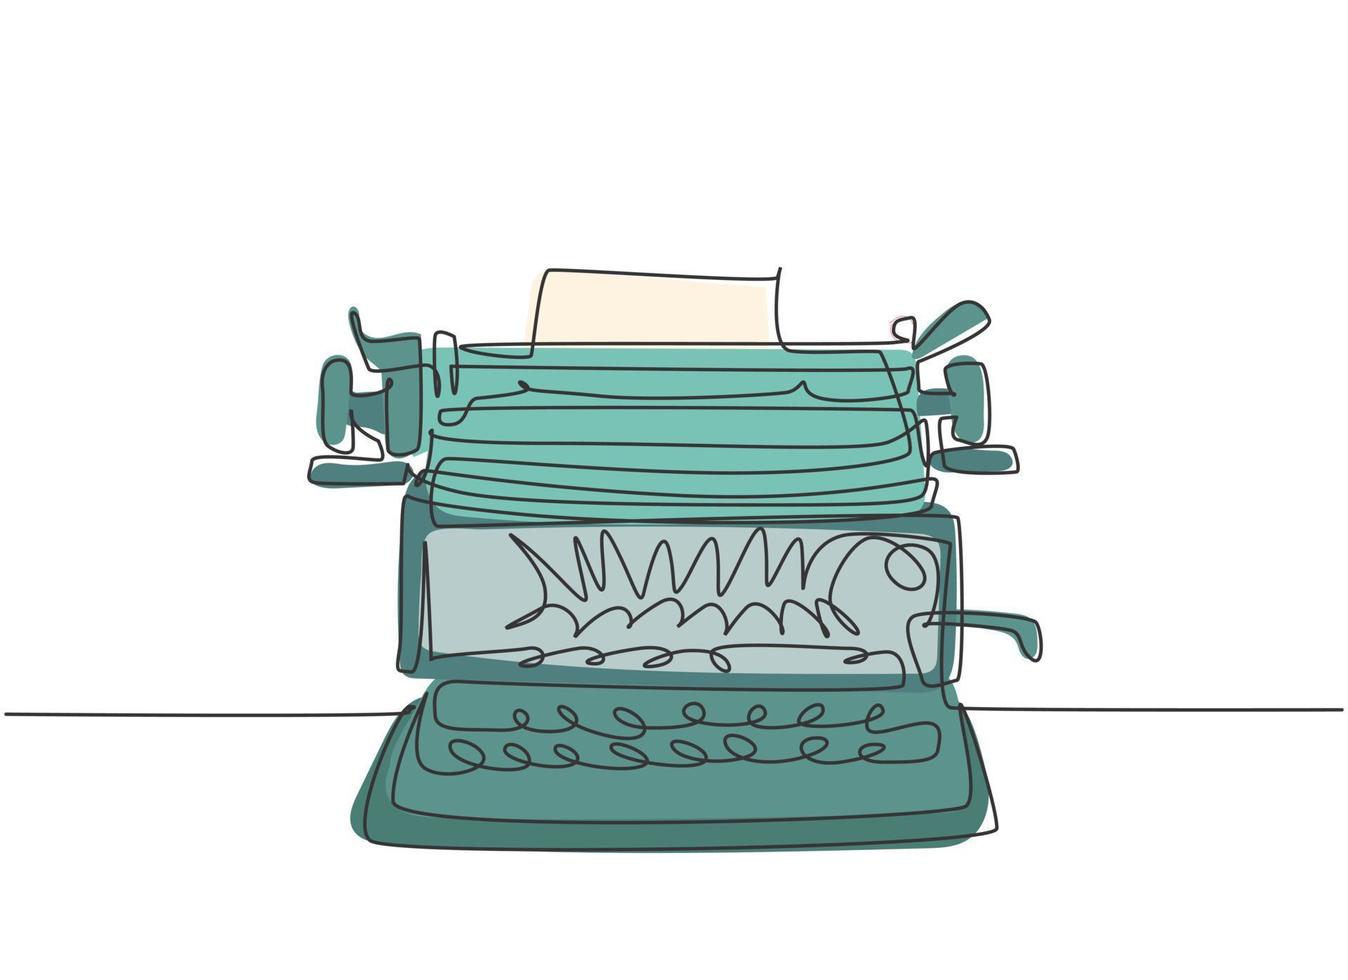 un dibujo de línea continua del frente de la máquina de escribir antigua retro desde la vista. Concepto de elemento de oficina clásico diseño de dibujo de una sola línea ilustración gráfica de vector